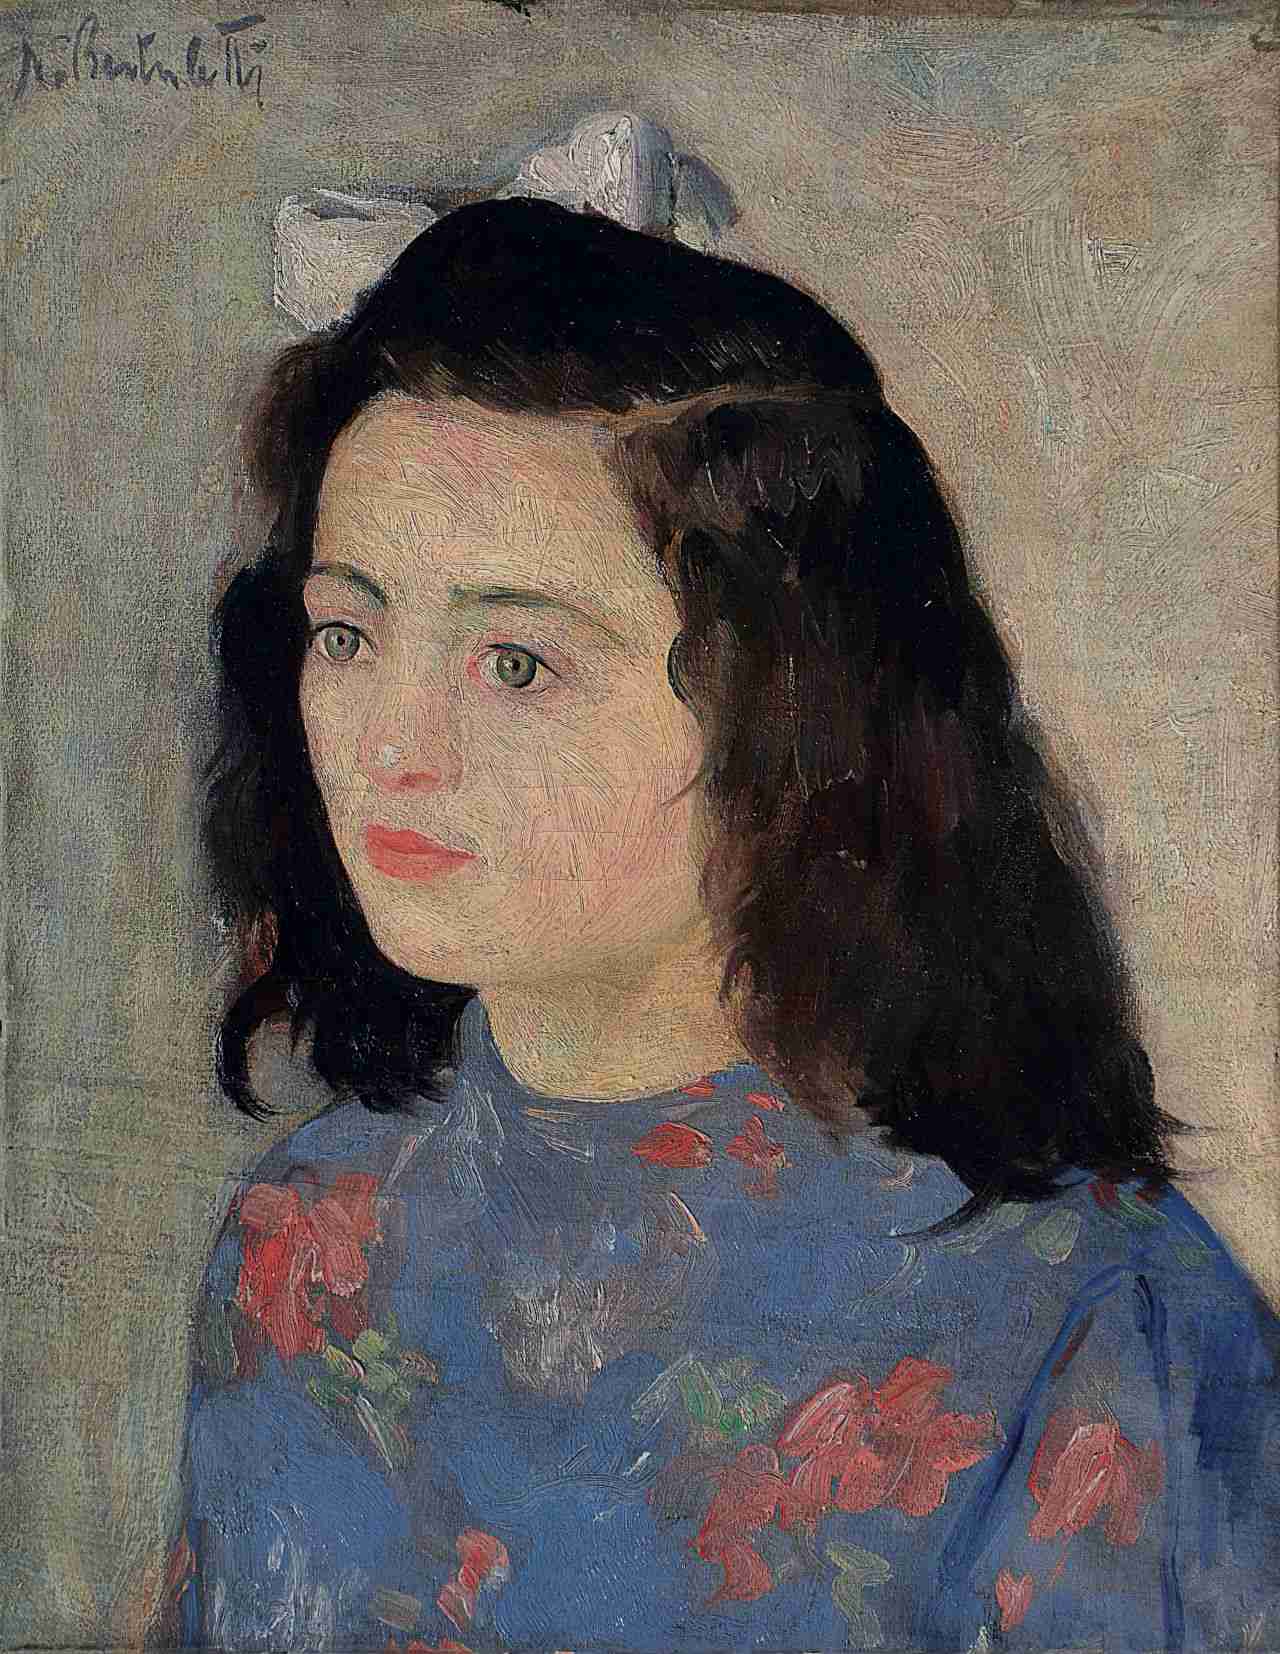 Bambina con il fiocco nei capelli 1937